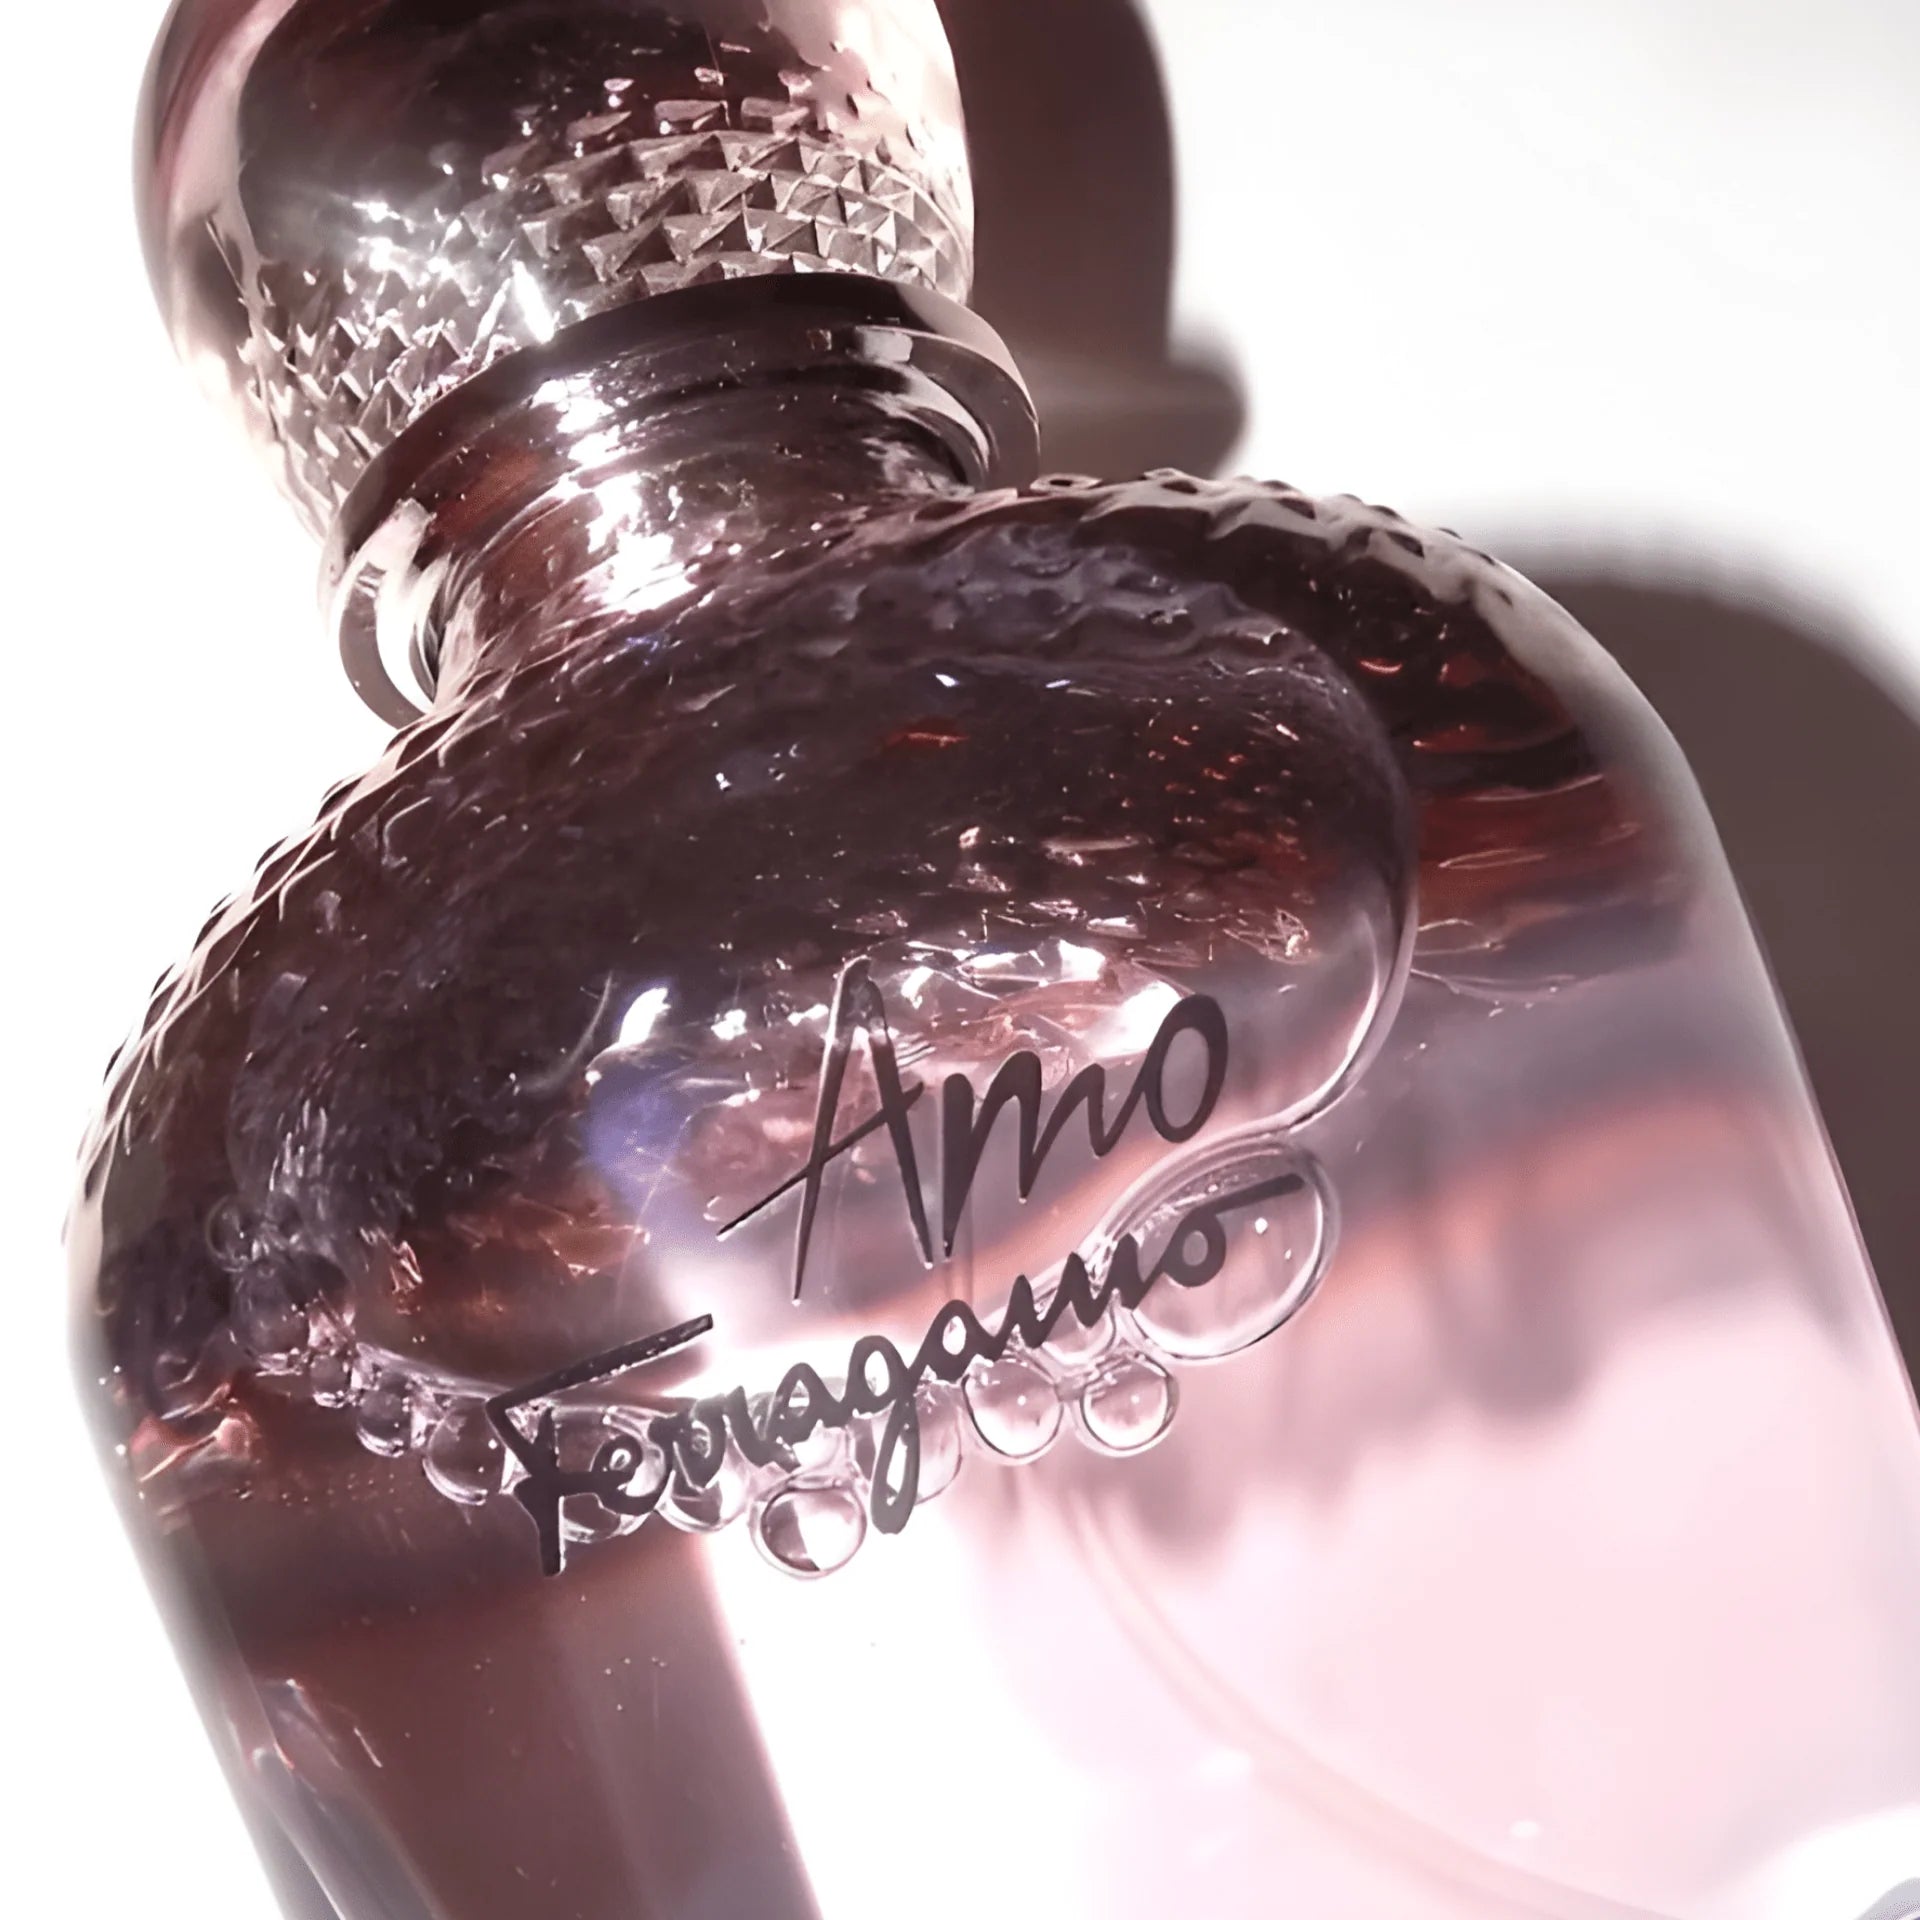 Salvatore Ferragamo Amo Bath & Shower Gel | My Perfume Shop Australia